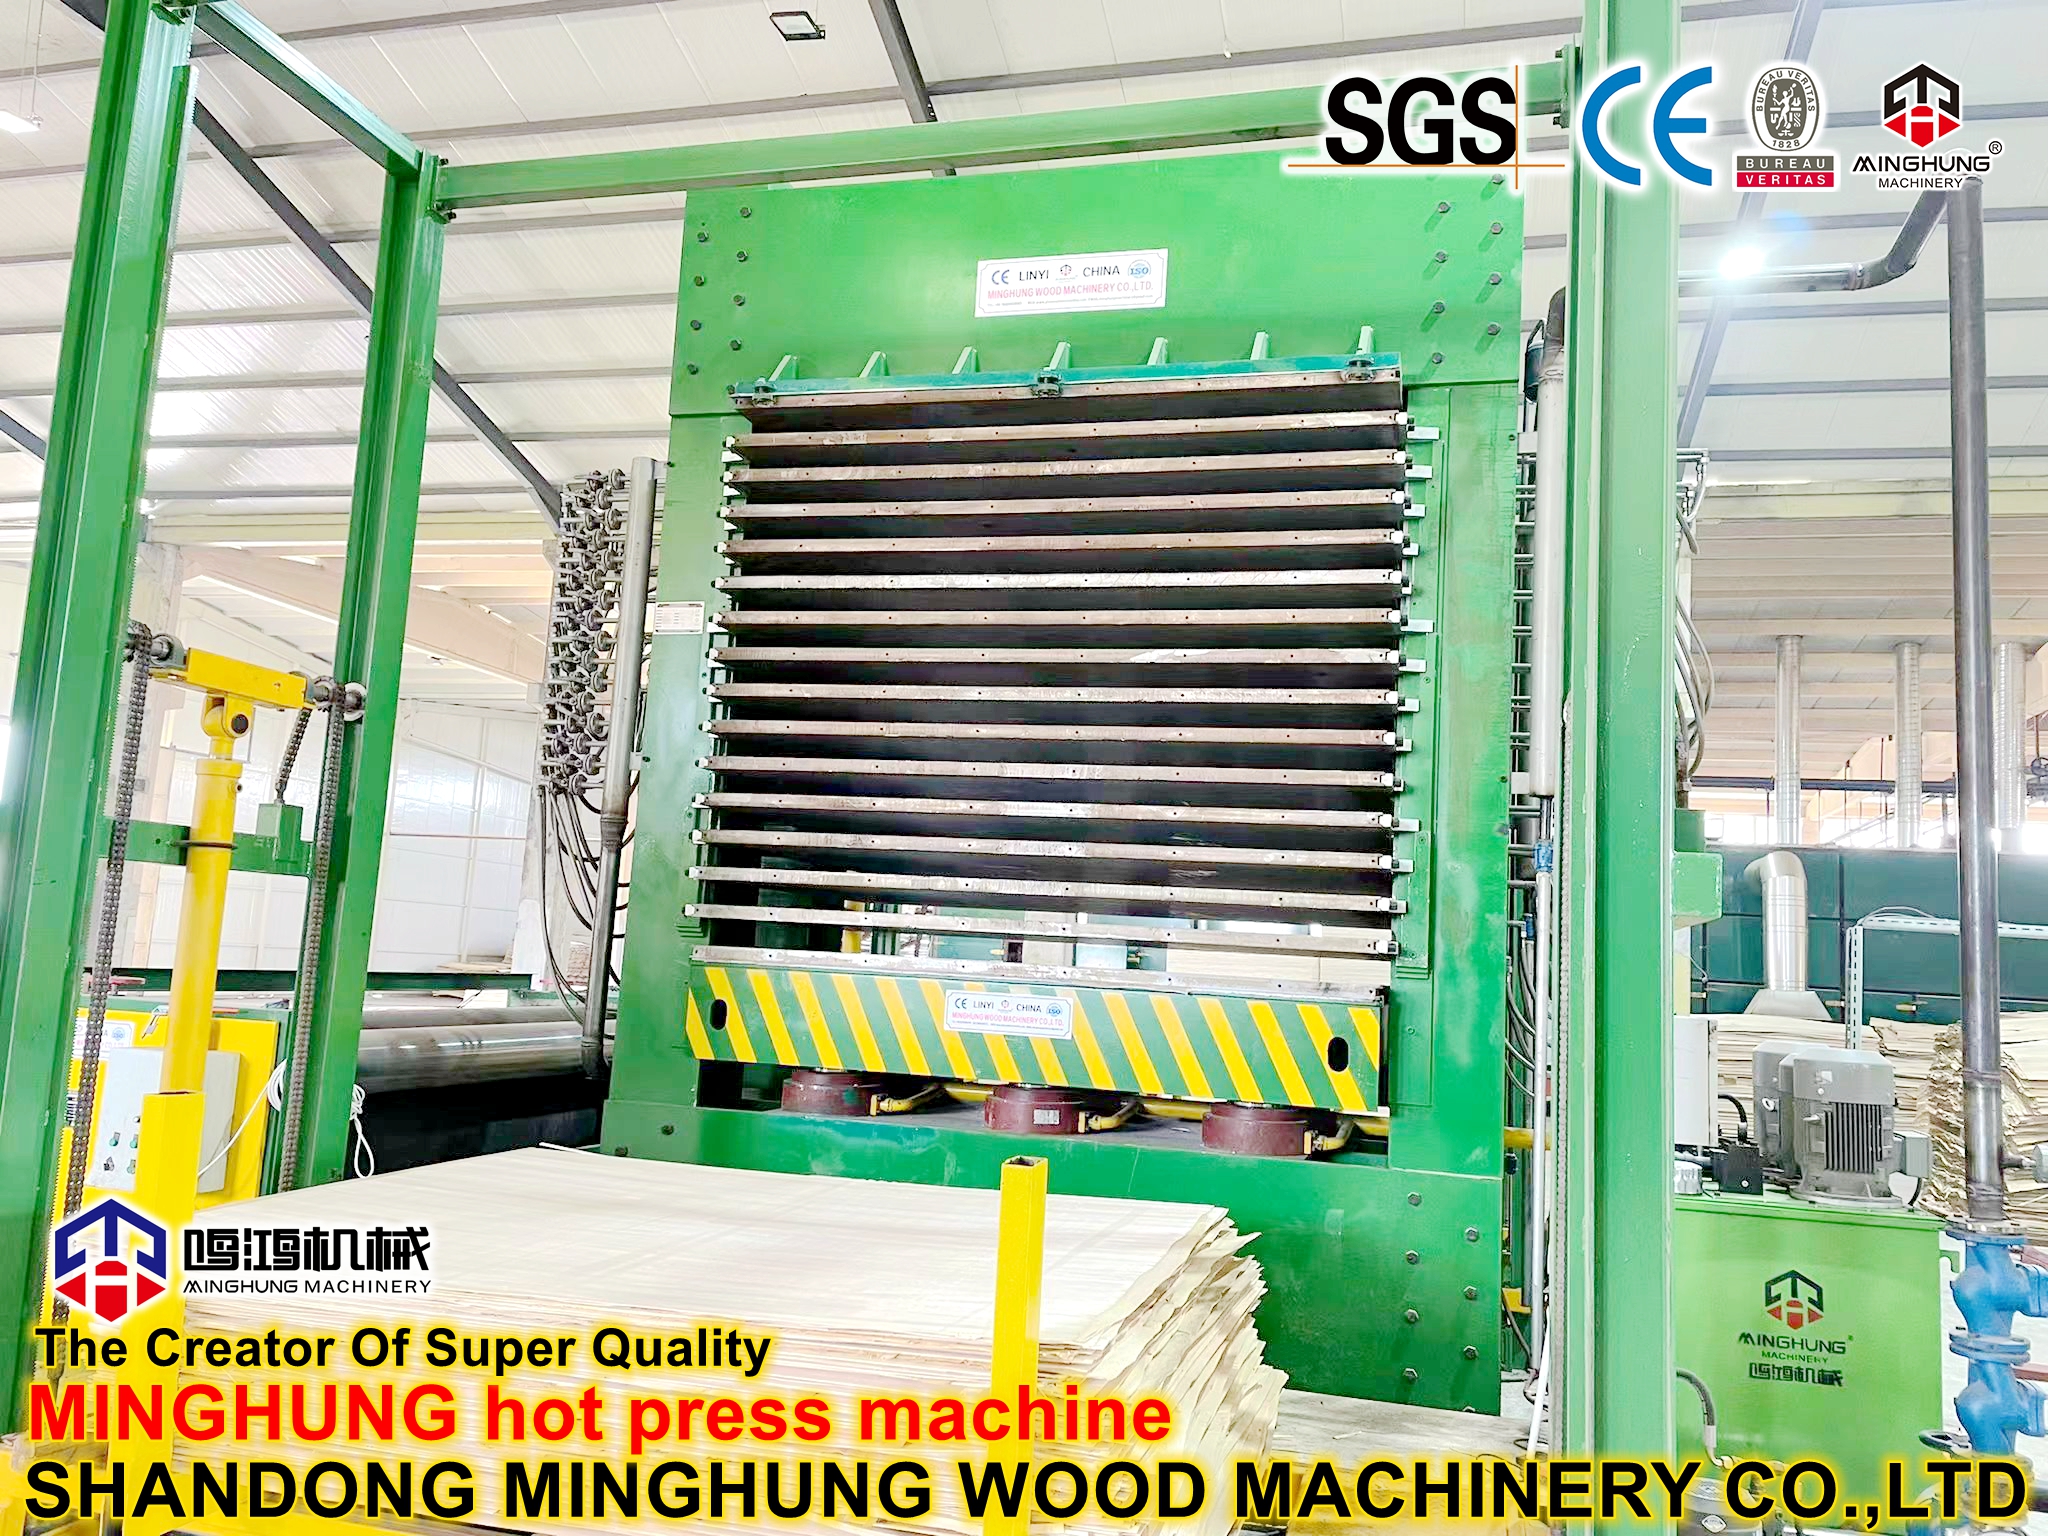 MINGHUNG hot press machine